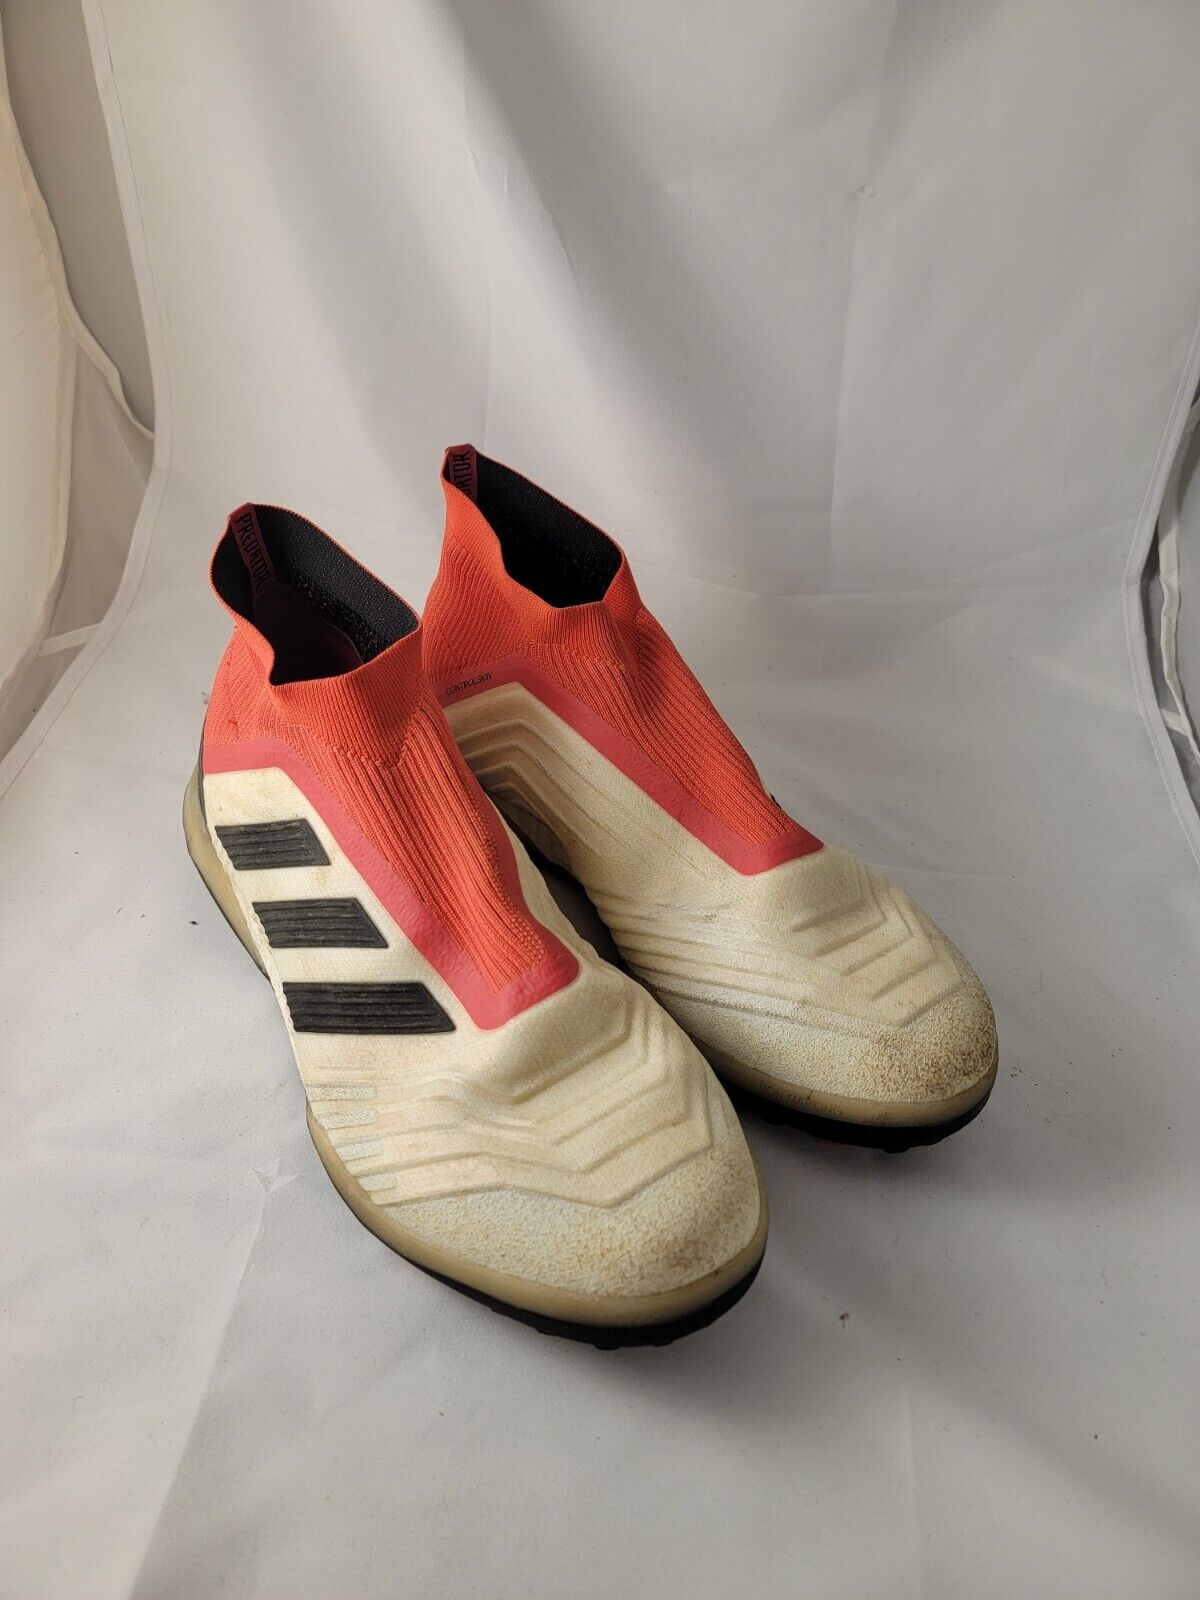 Adidas Predator Control Skin Master Control shoes male sz 12. Turf | eBay